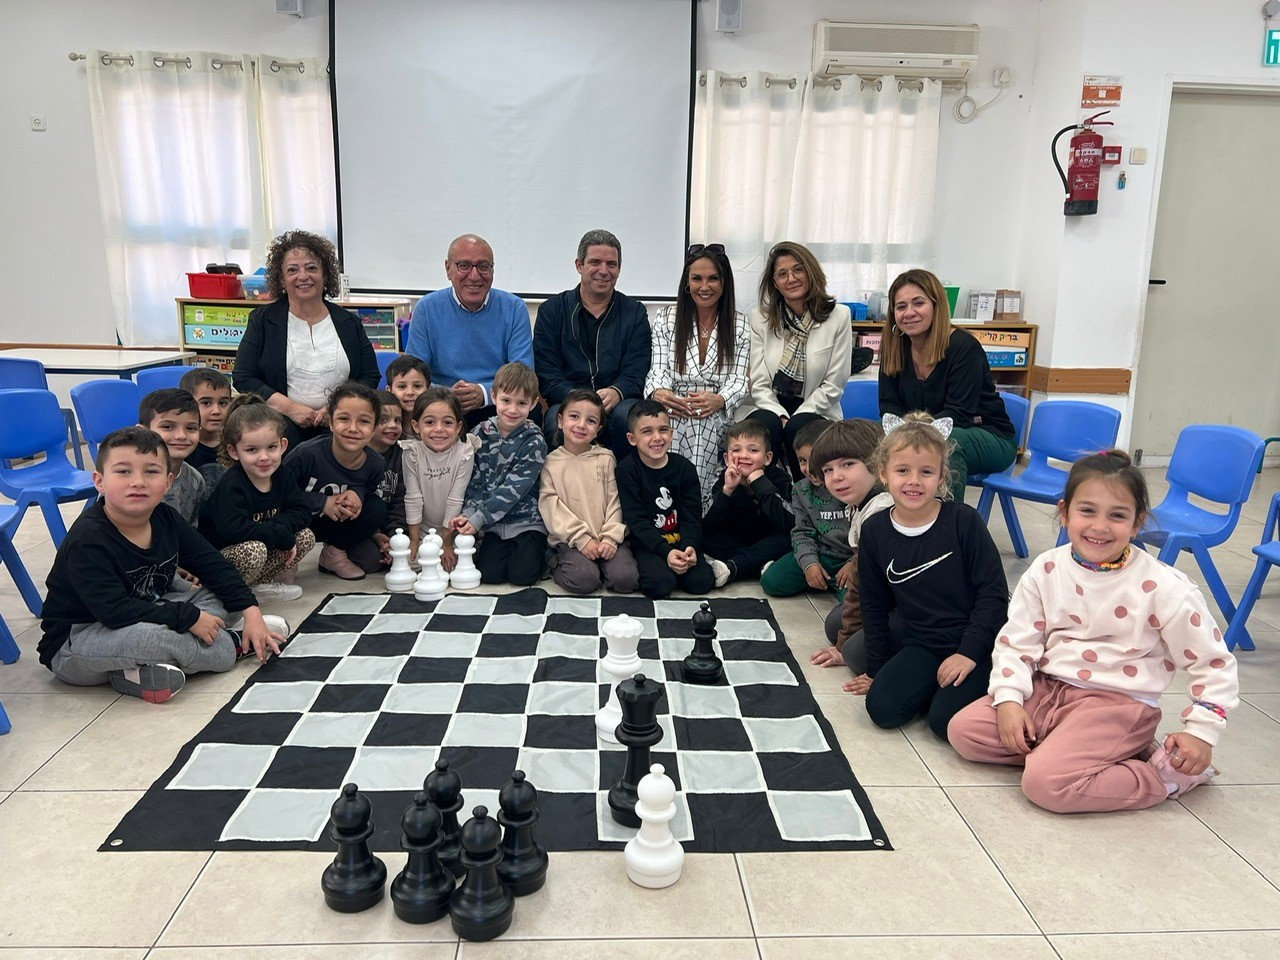 ילדי אילת אוהבים לשחק שחמט